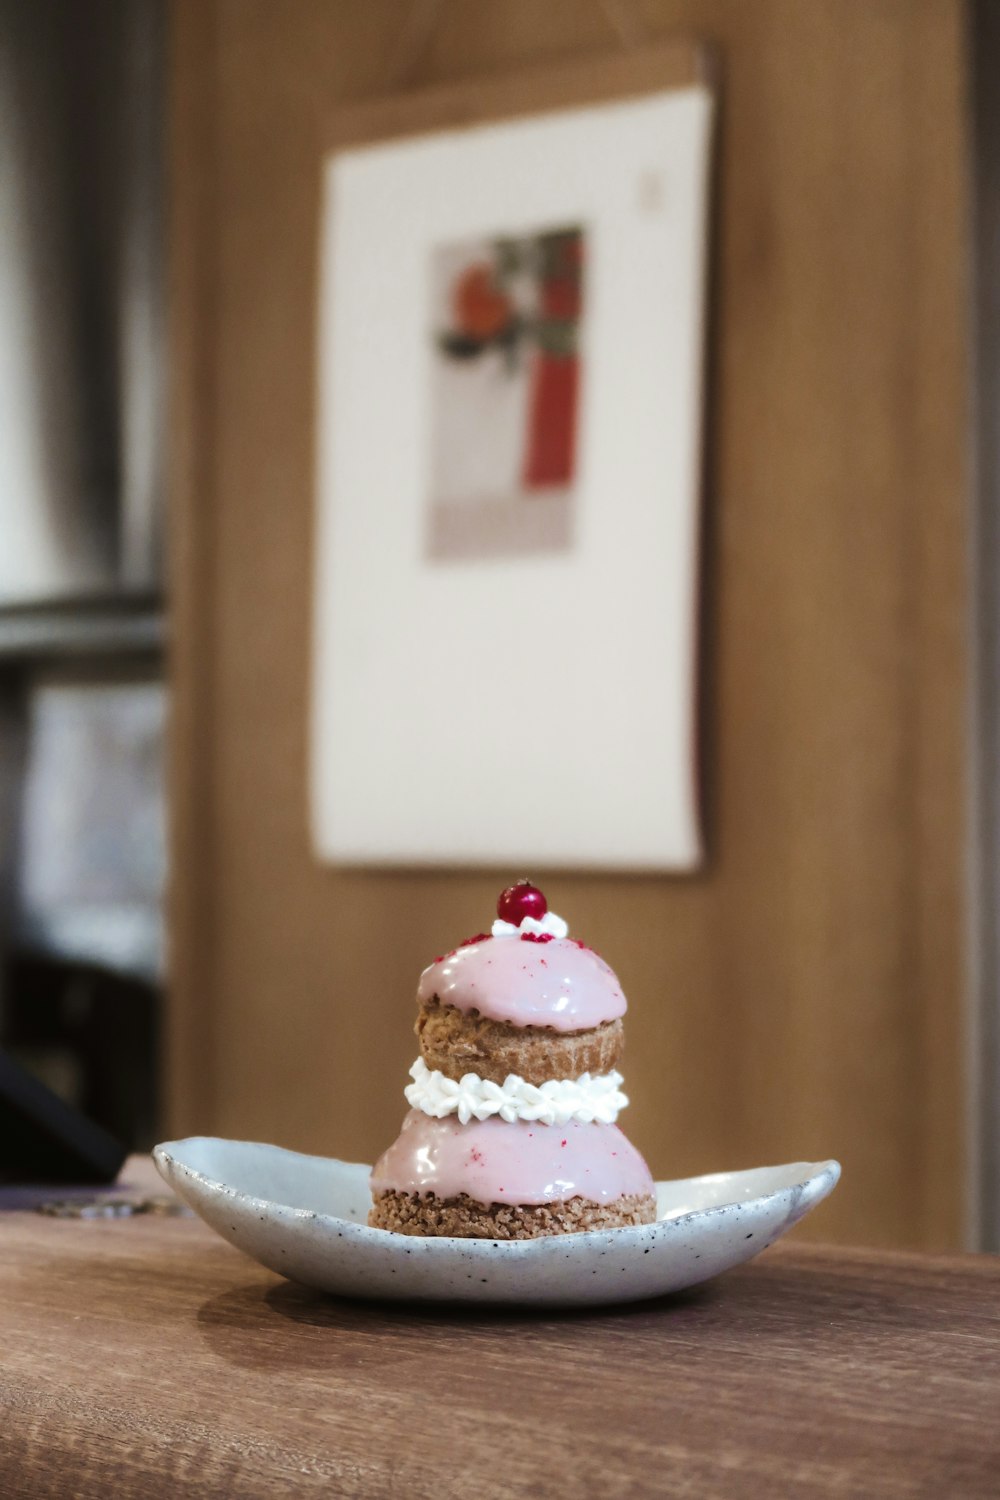 cupcake rosa na placa de cerâmica branca